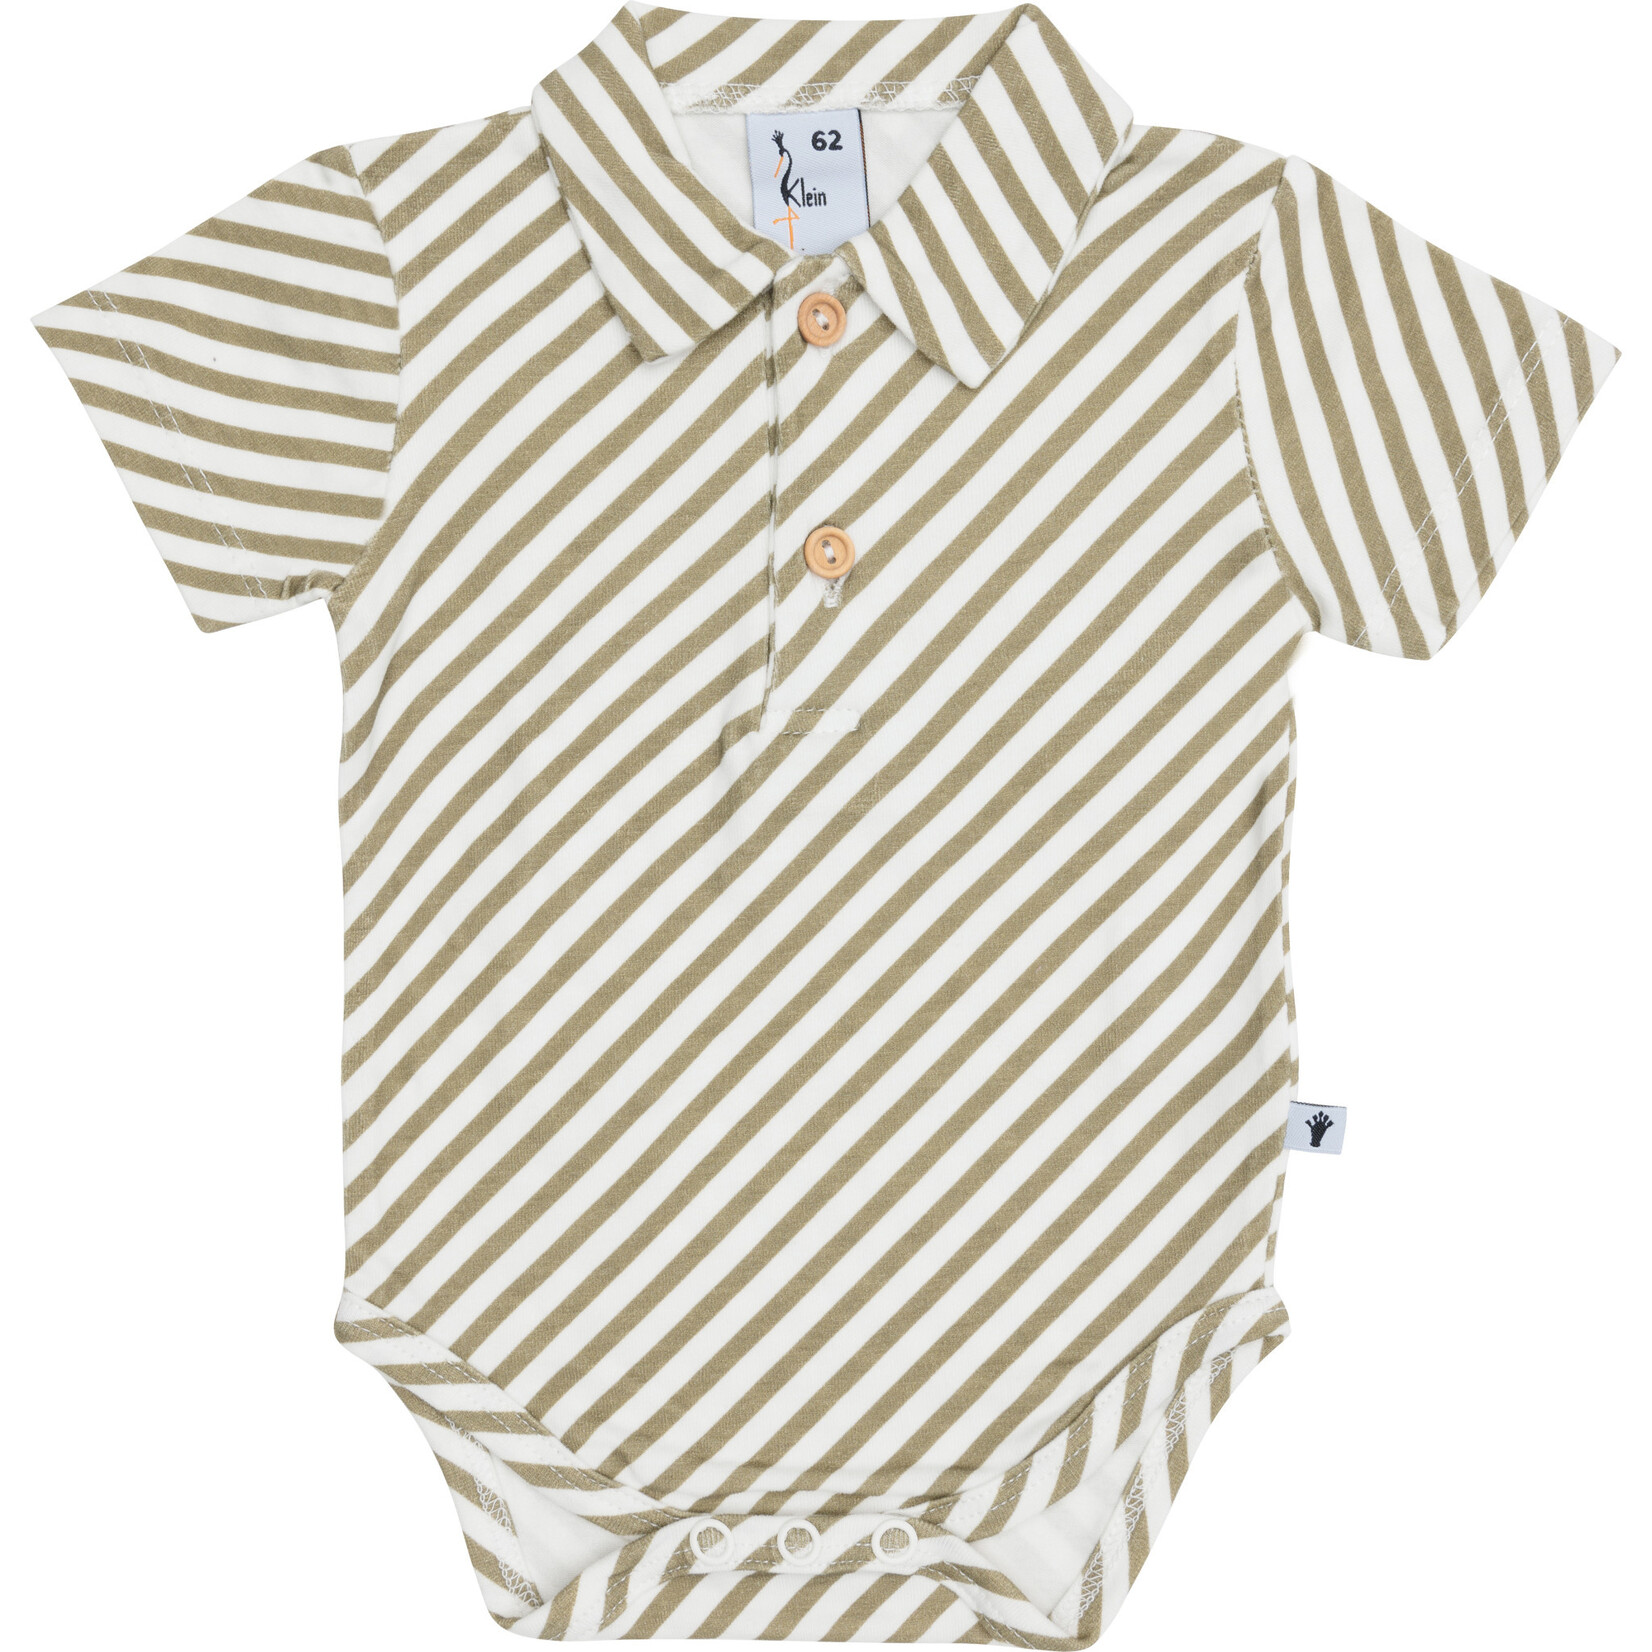 Klein Baby Polobody stripe off white/twill